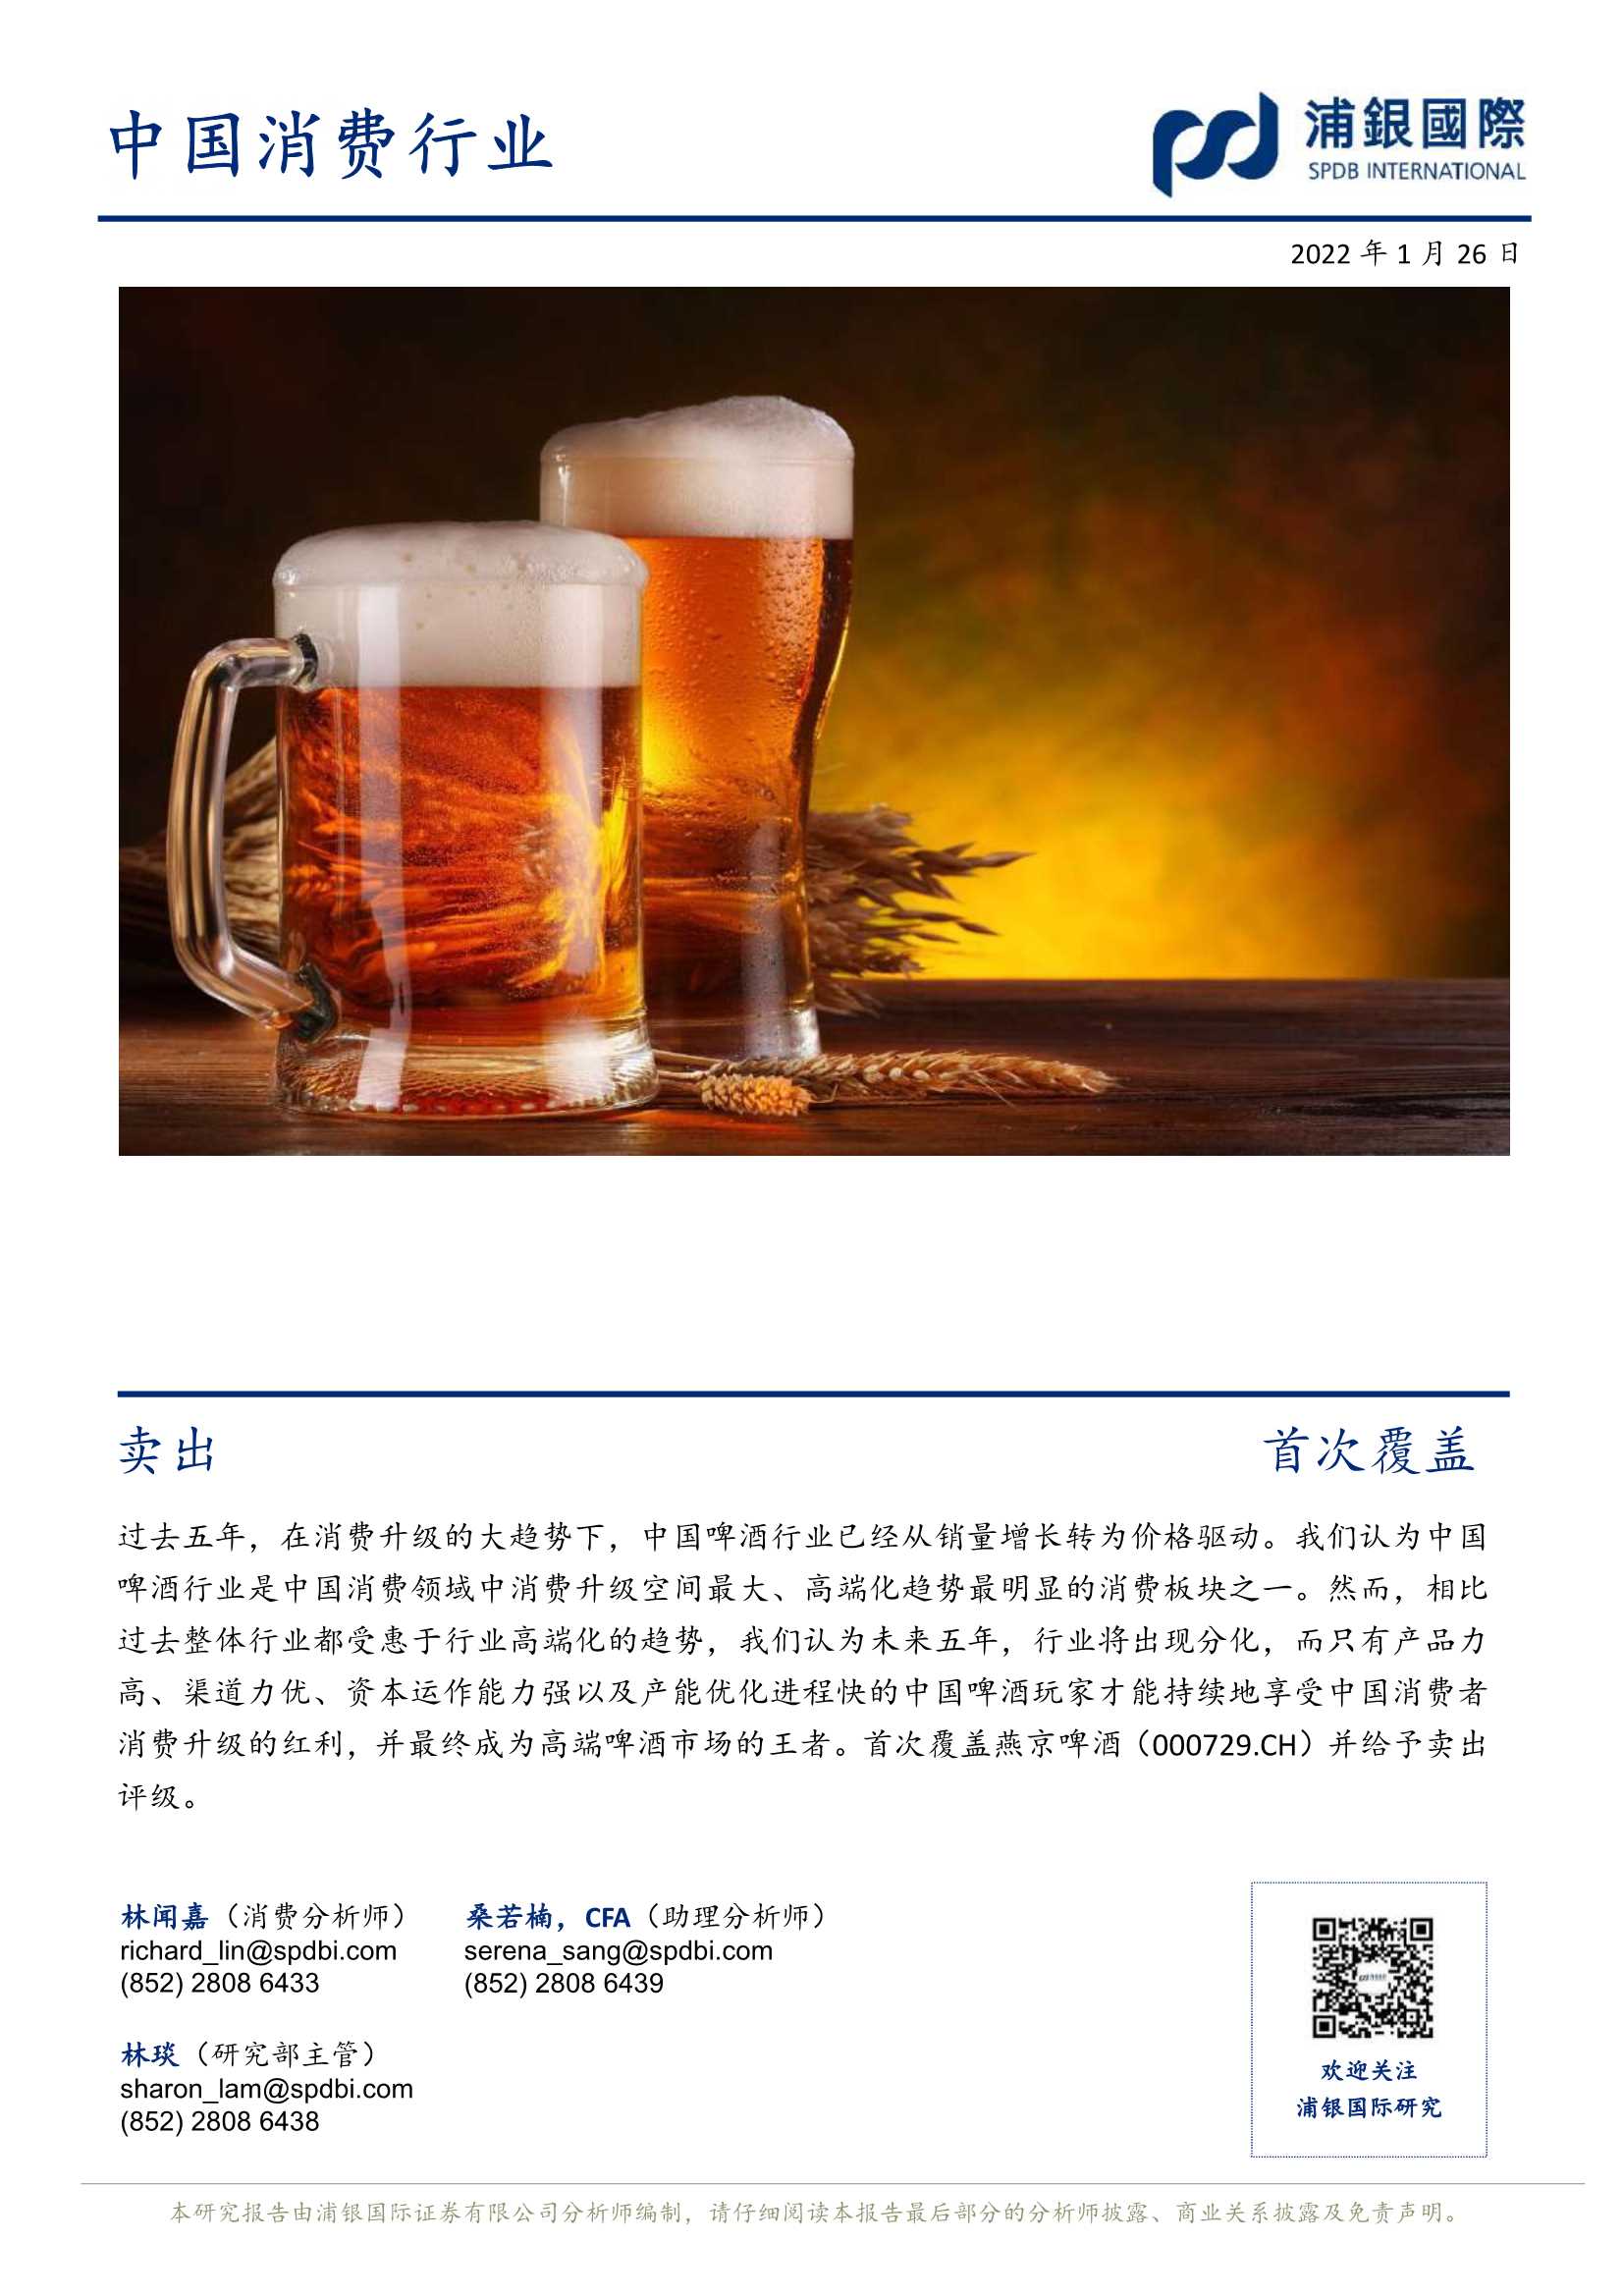 浦银国际-燕京啤酒-000729-再造辉煌还需破旧立新-20220126-34页